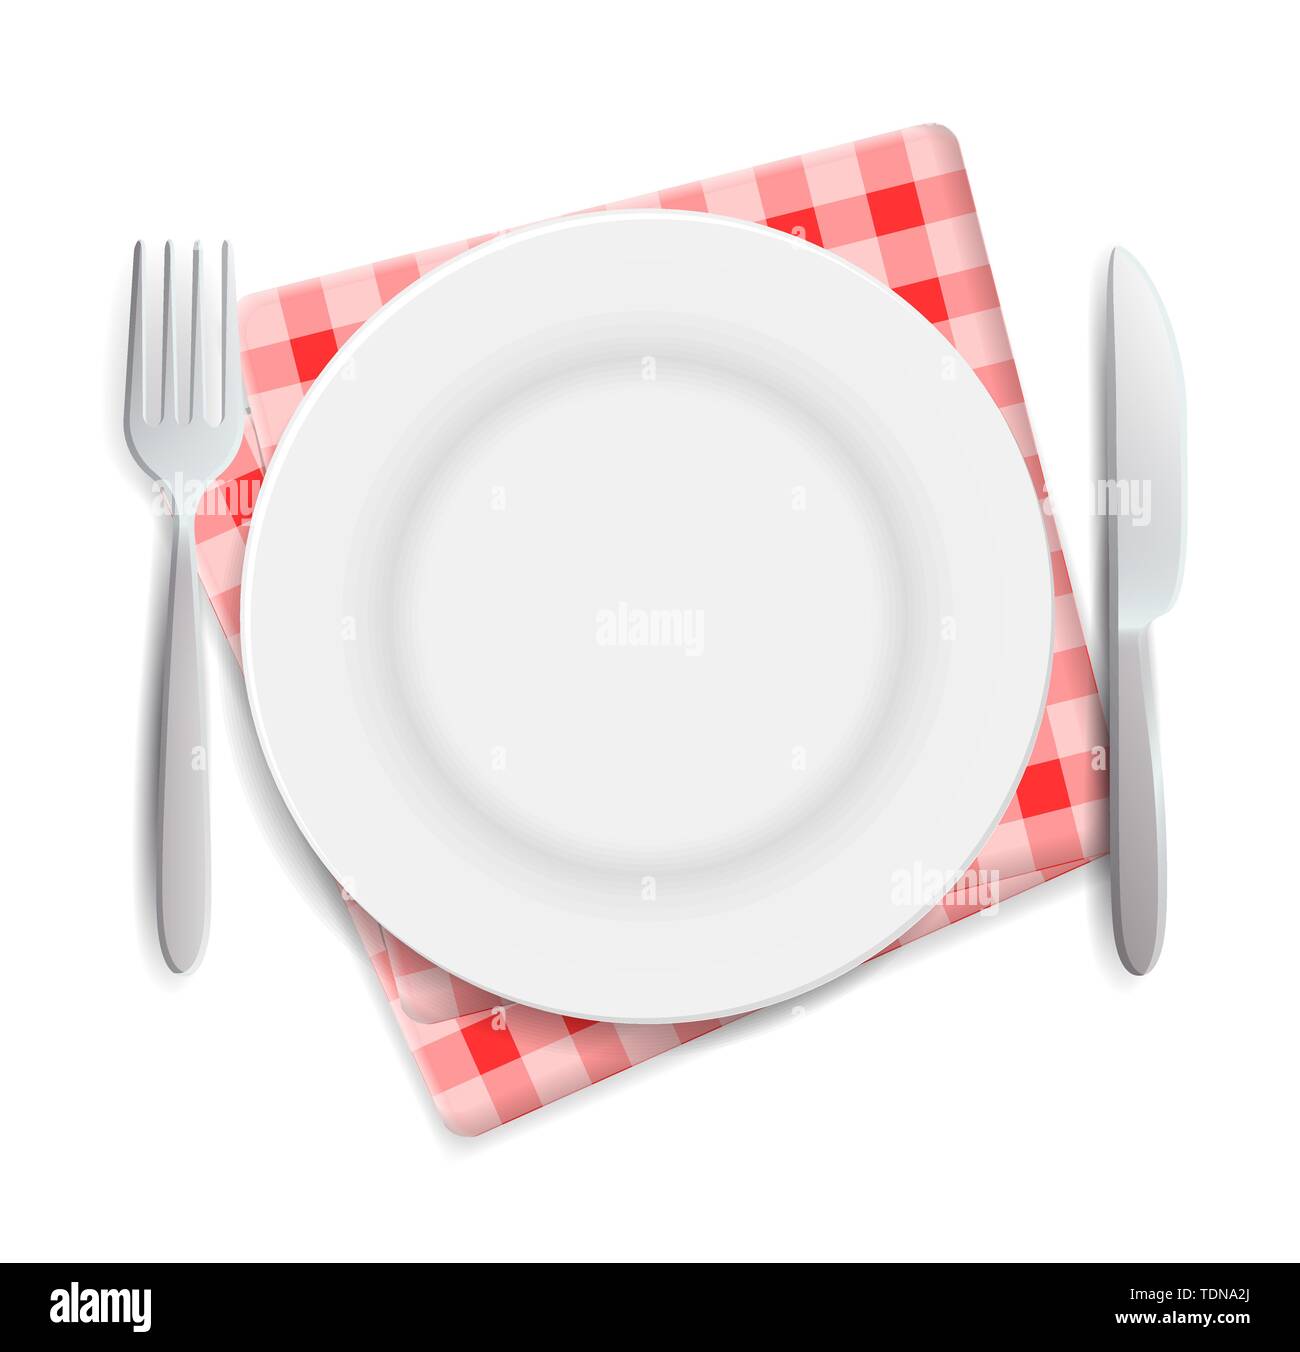 La plaque vide réaliste, fourchette et couteau rouge à carreaux servi sur nappes vector illustration. Peut être utilisé pour la publicité Illustration de Vecteur